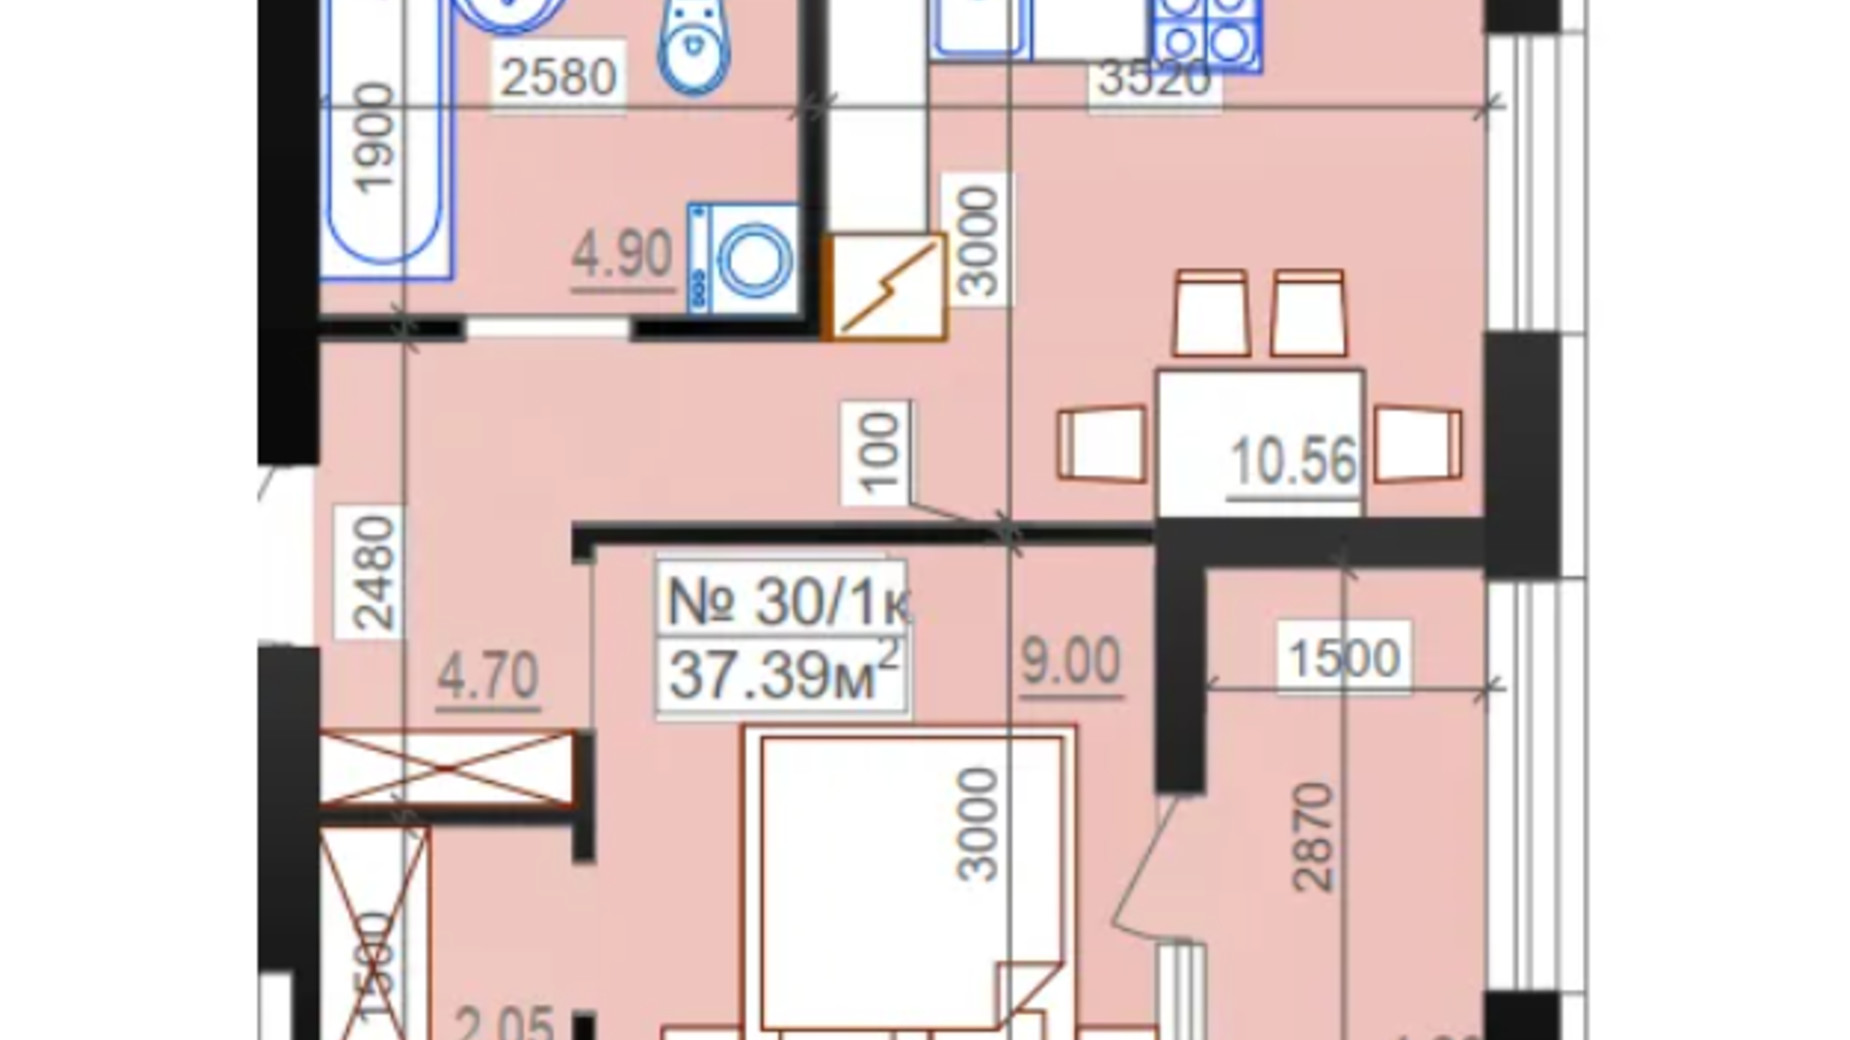 Планировка 1-комнатной квартиры в ЖК Миланж 37.39 м², фото 548244